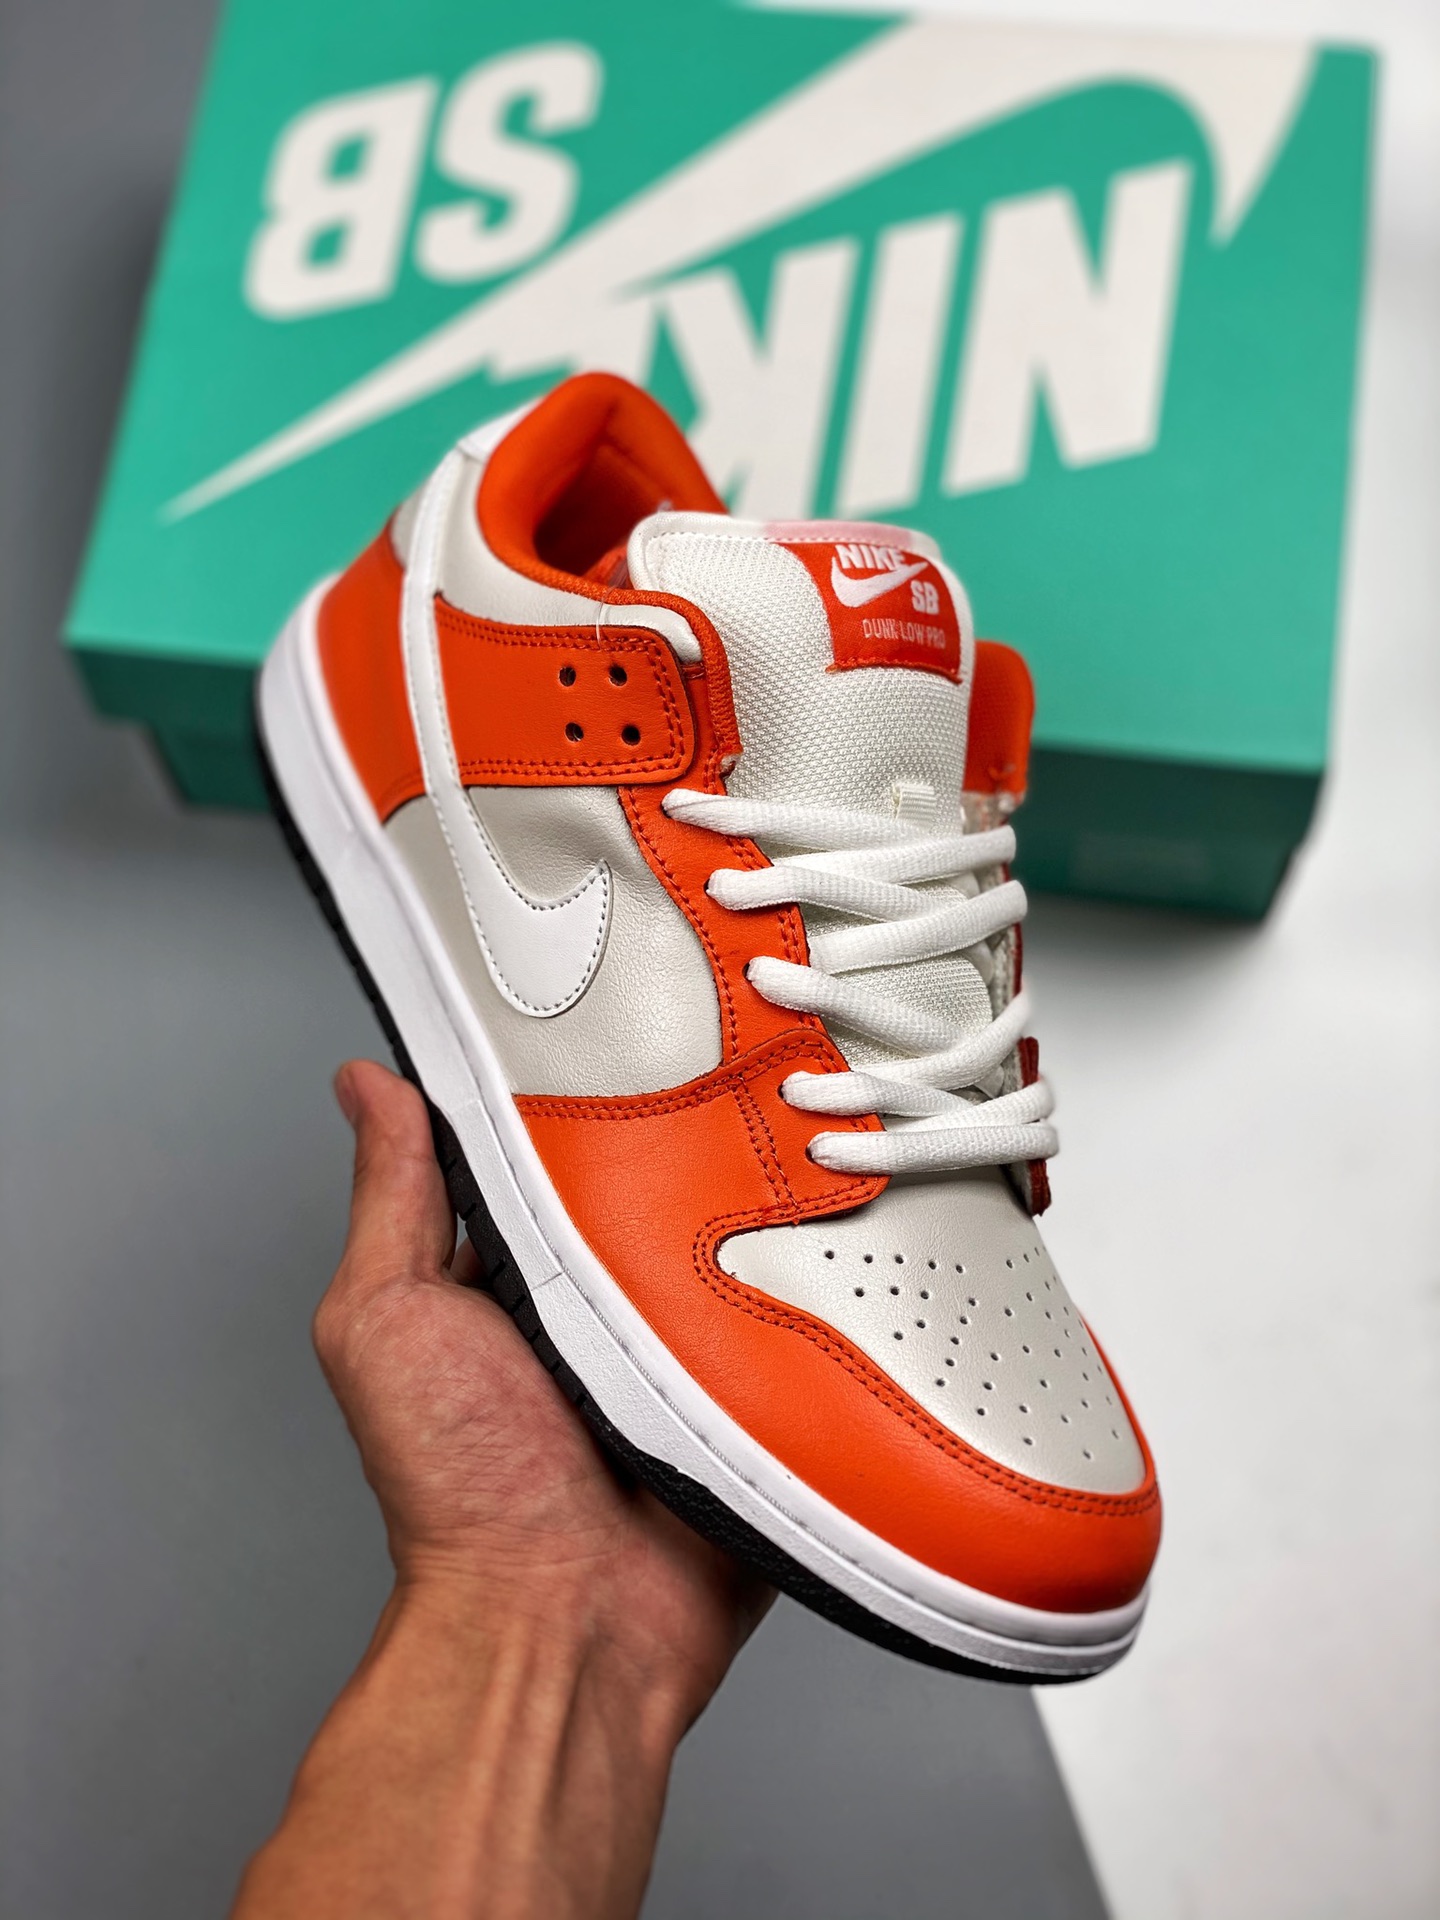 Nike SB Dunk Low "Orange Box" Safety Orange/White-Cream Shoes